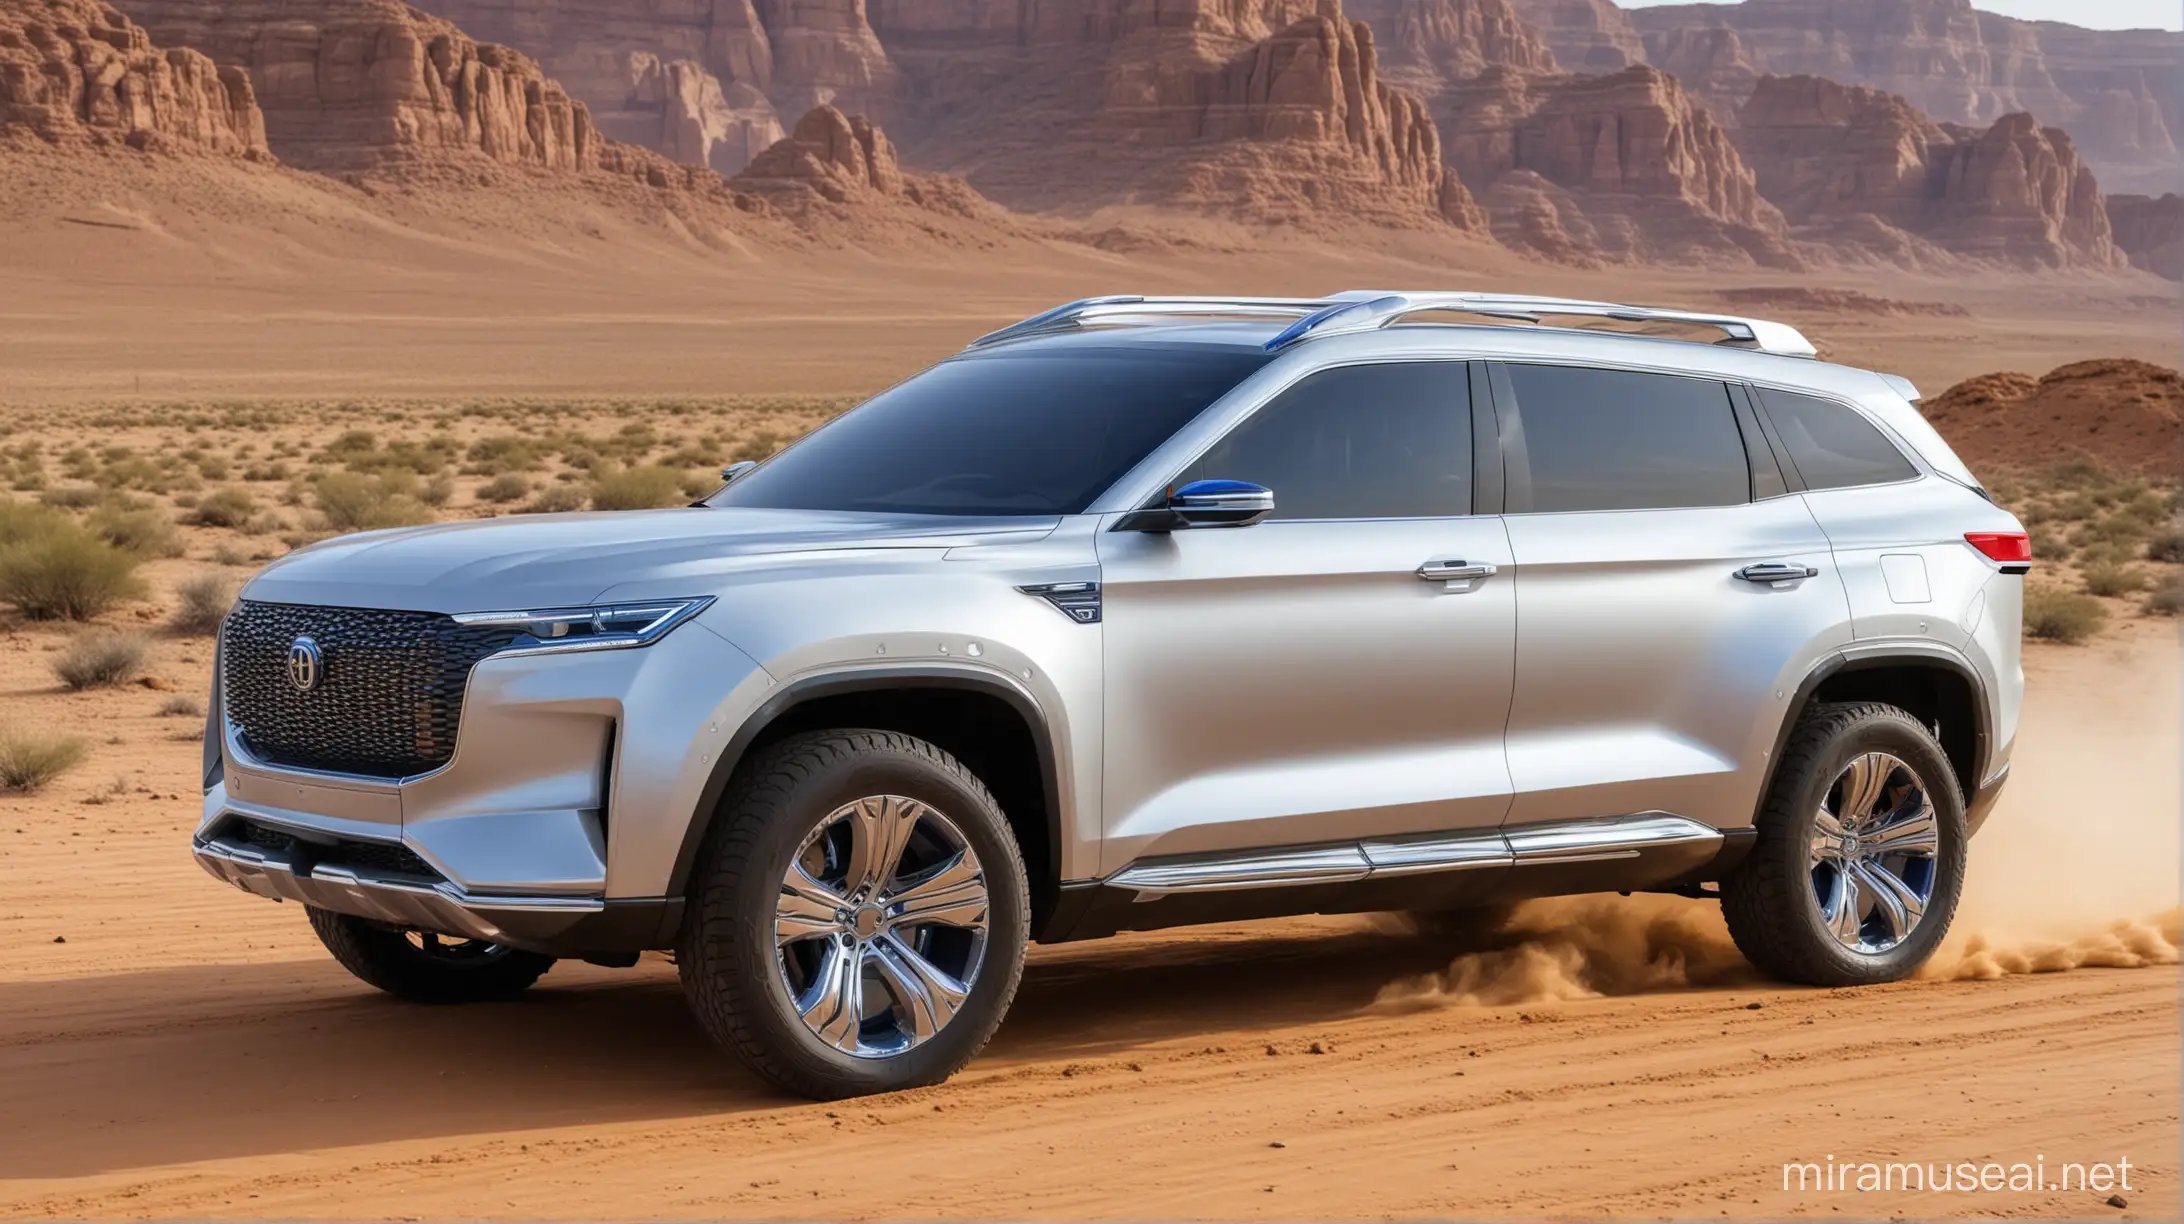 IKCO DENA Inspired FullSize SUV in Silver and Blue on Desert Road